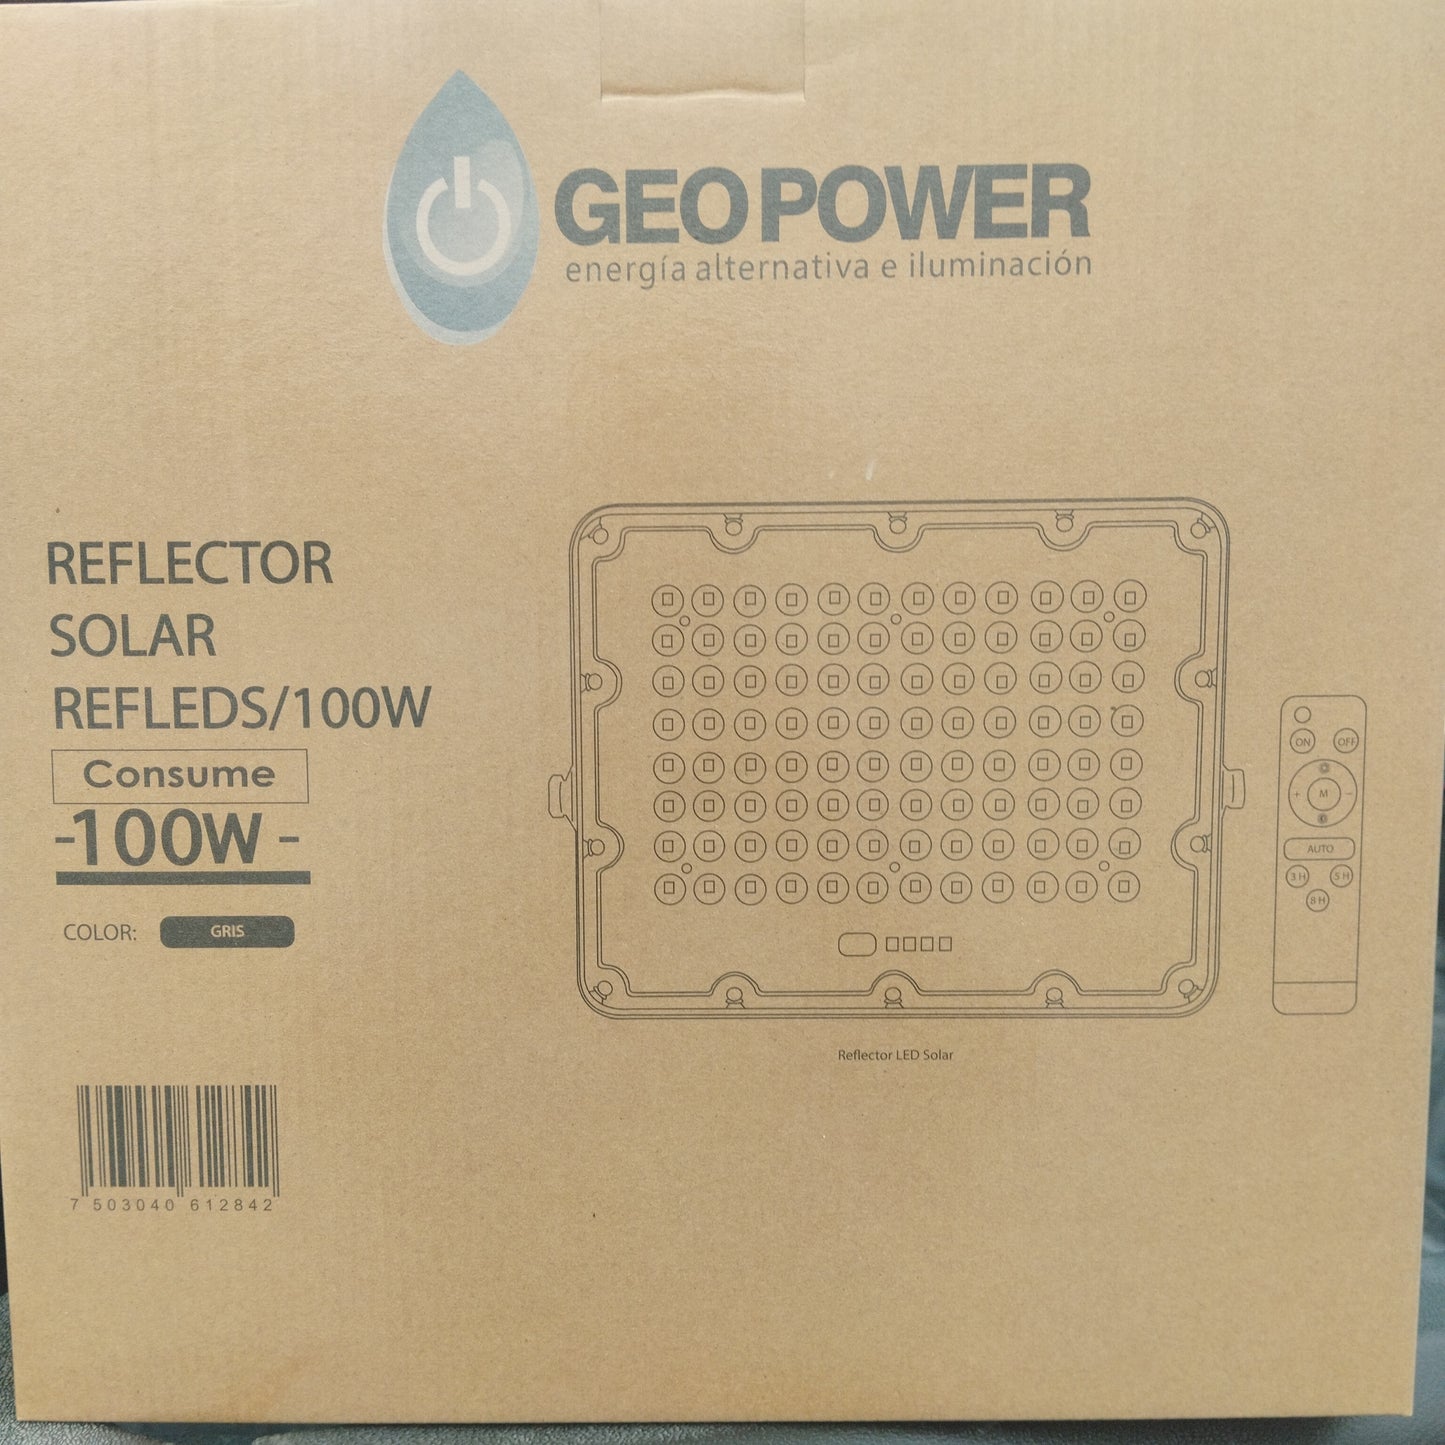 Reflector SOLAR LED 100W 6500K IP65 REFLECTOR GEOPOWER 100W LUZ FRIA 6500K REFLEDS/100W